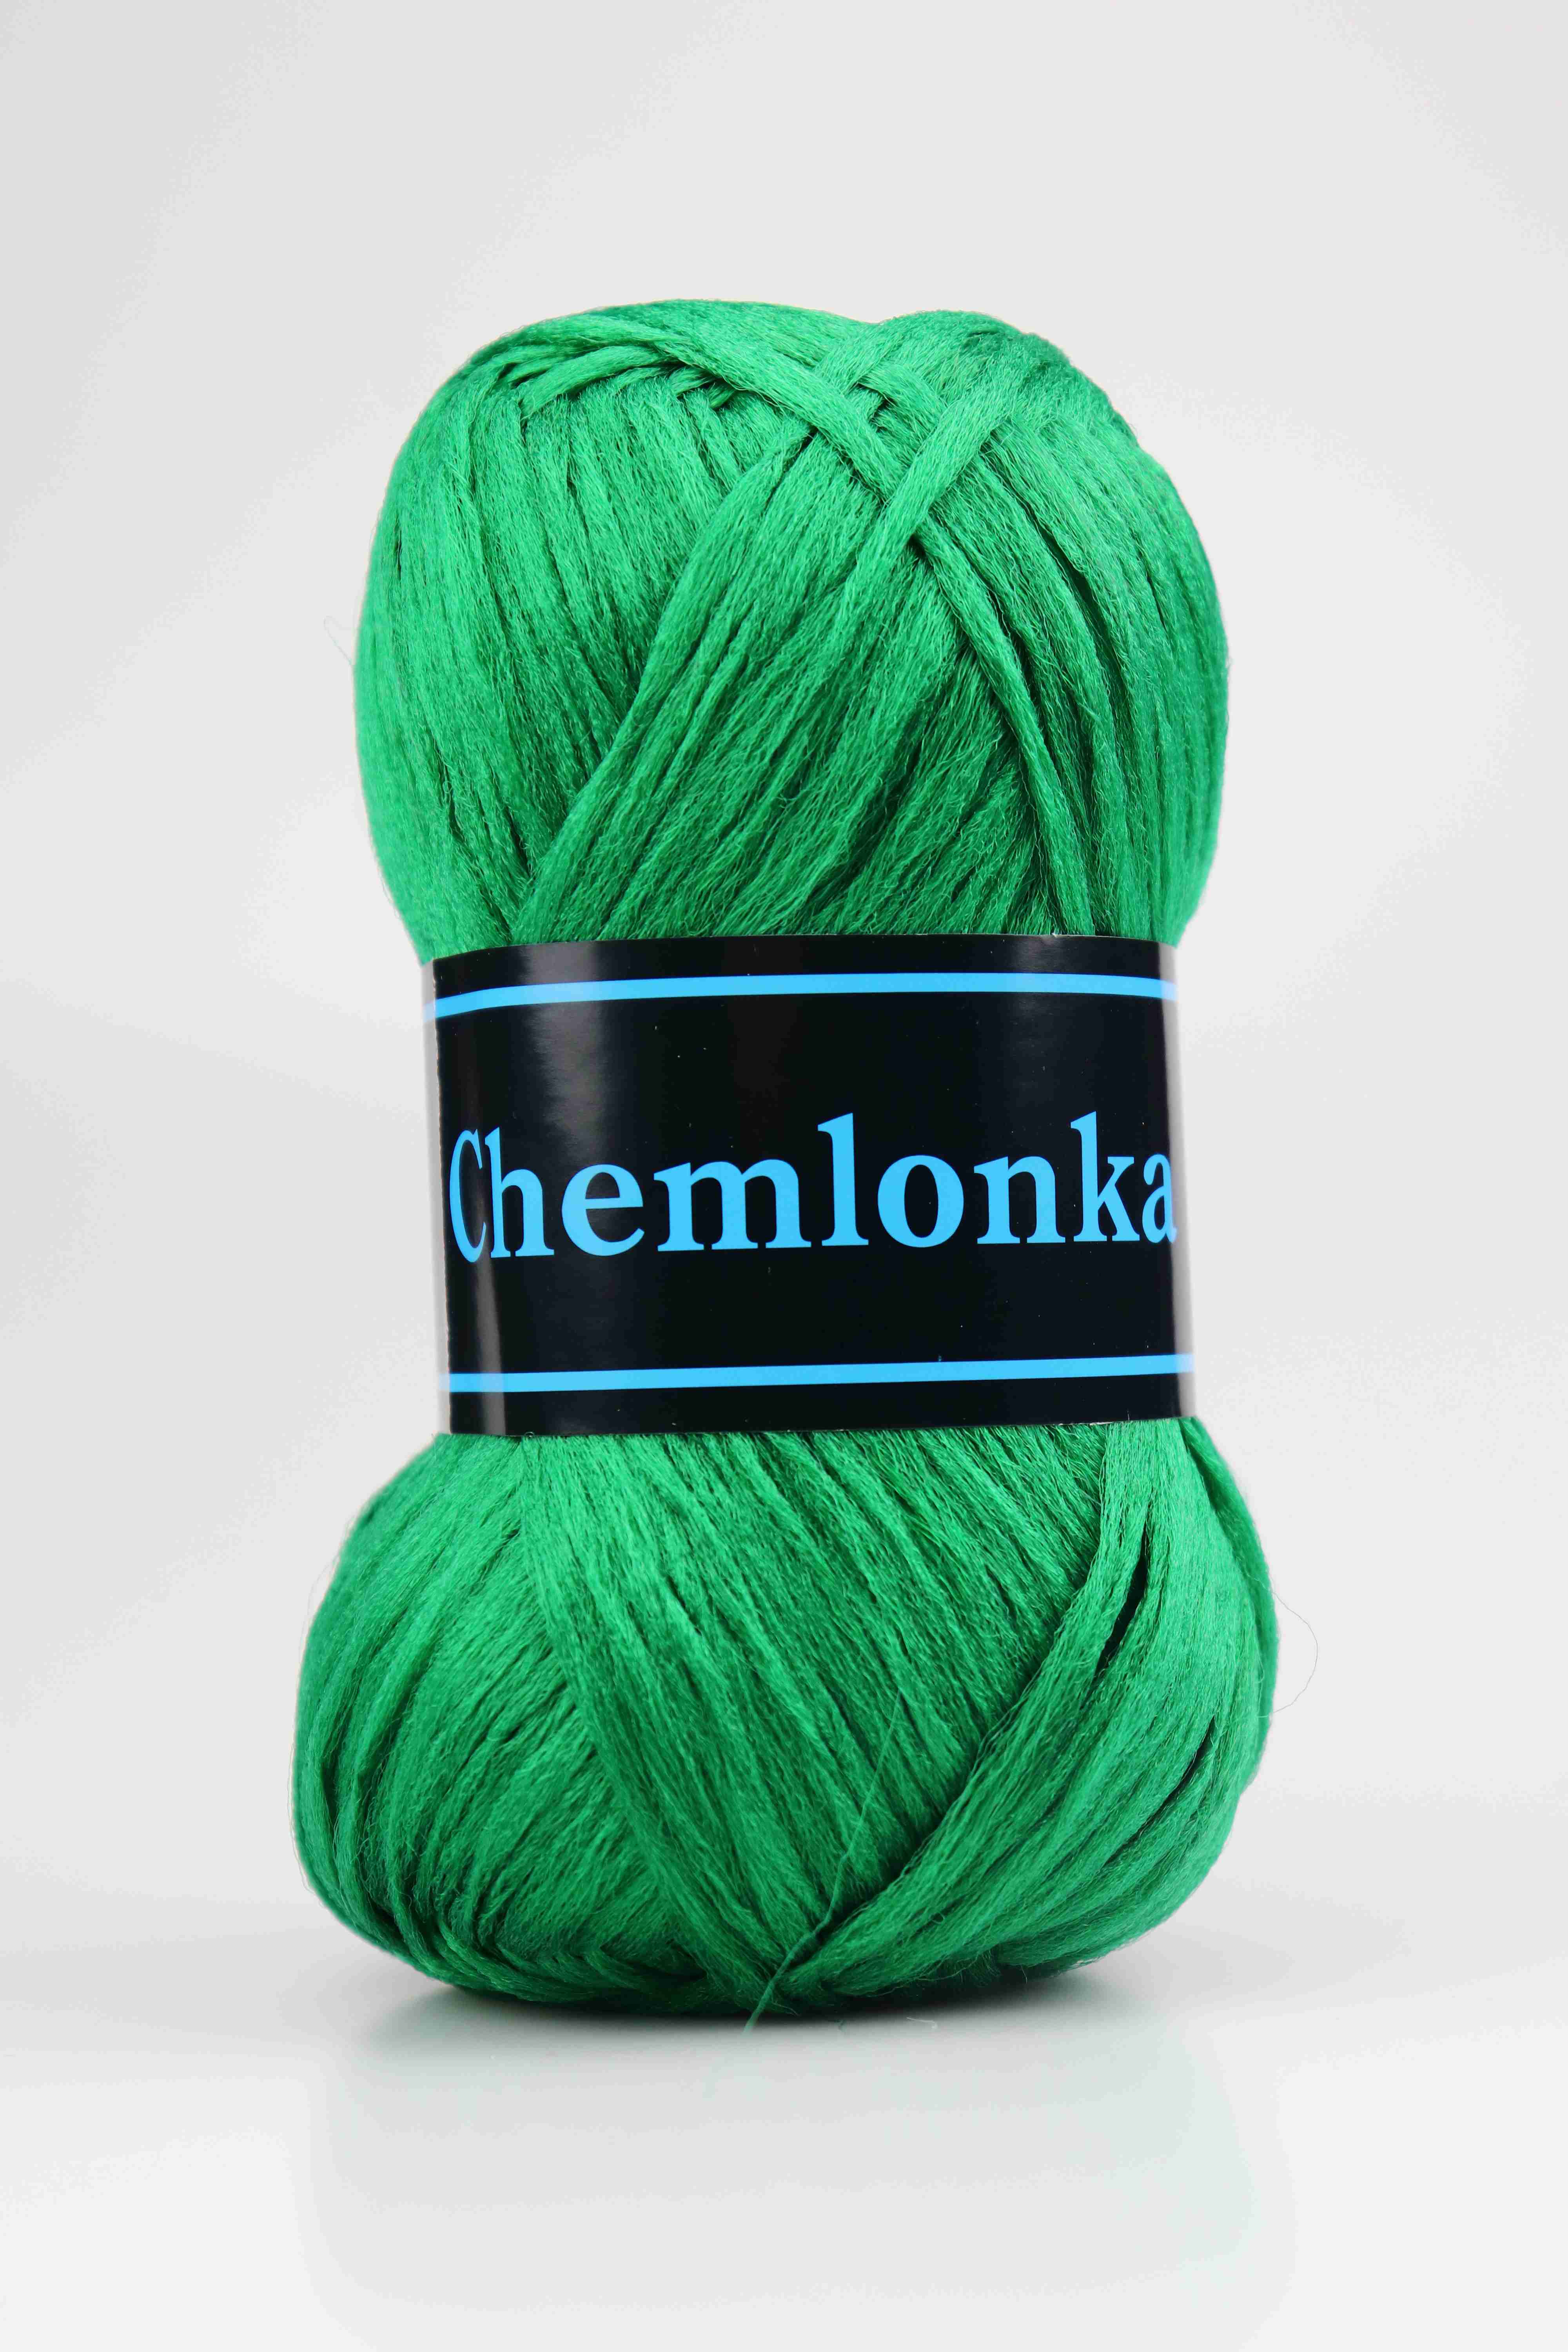 Ariadne yarn Chemlonka 600 green